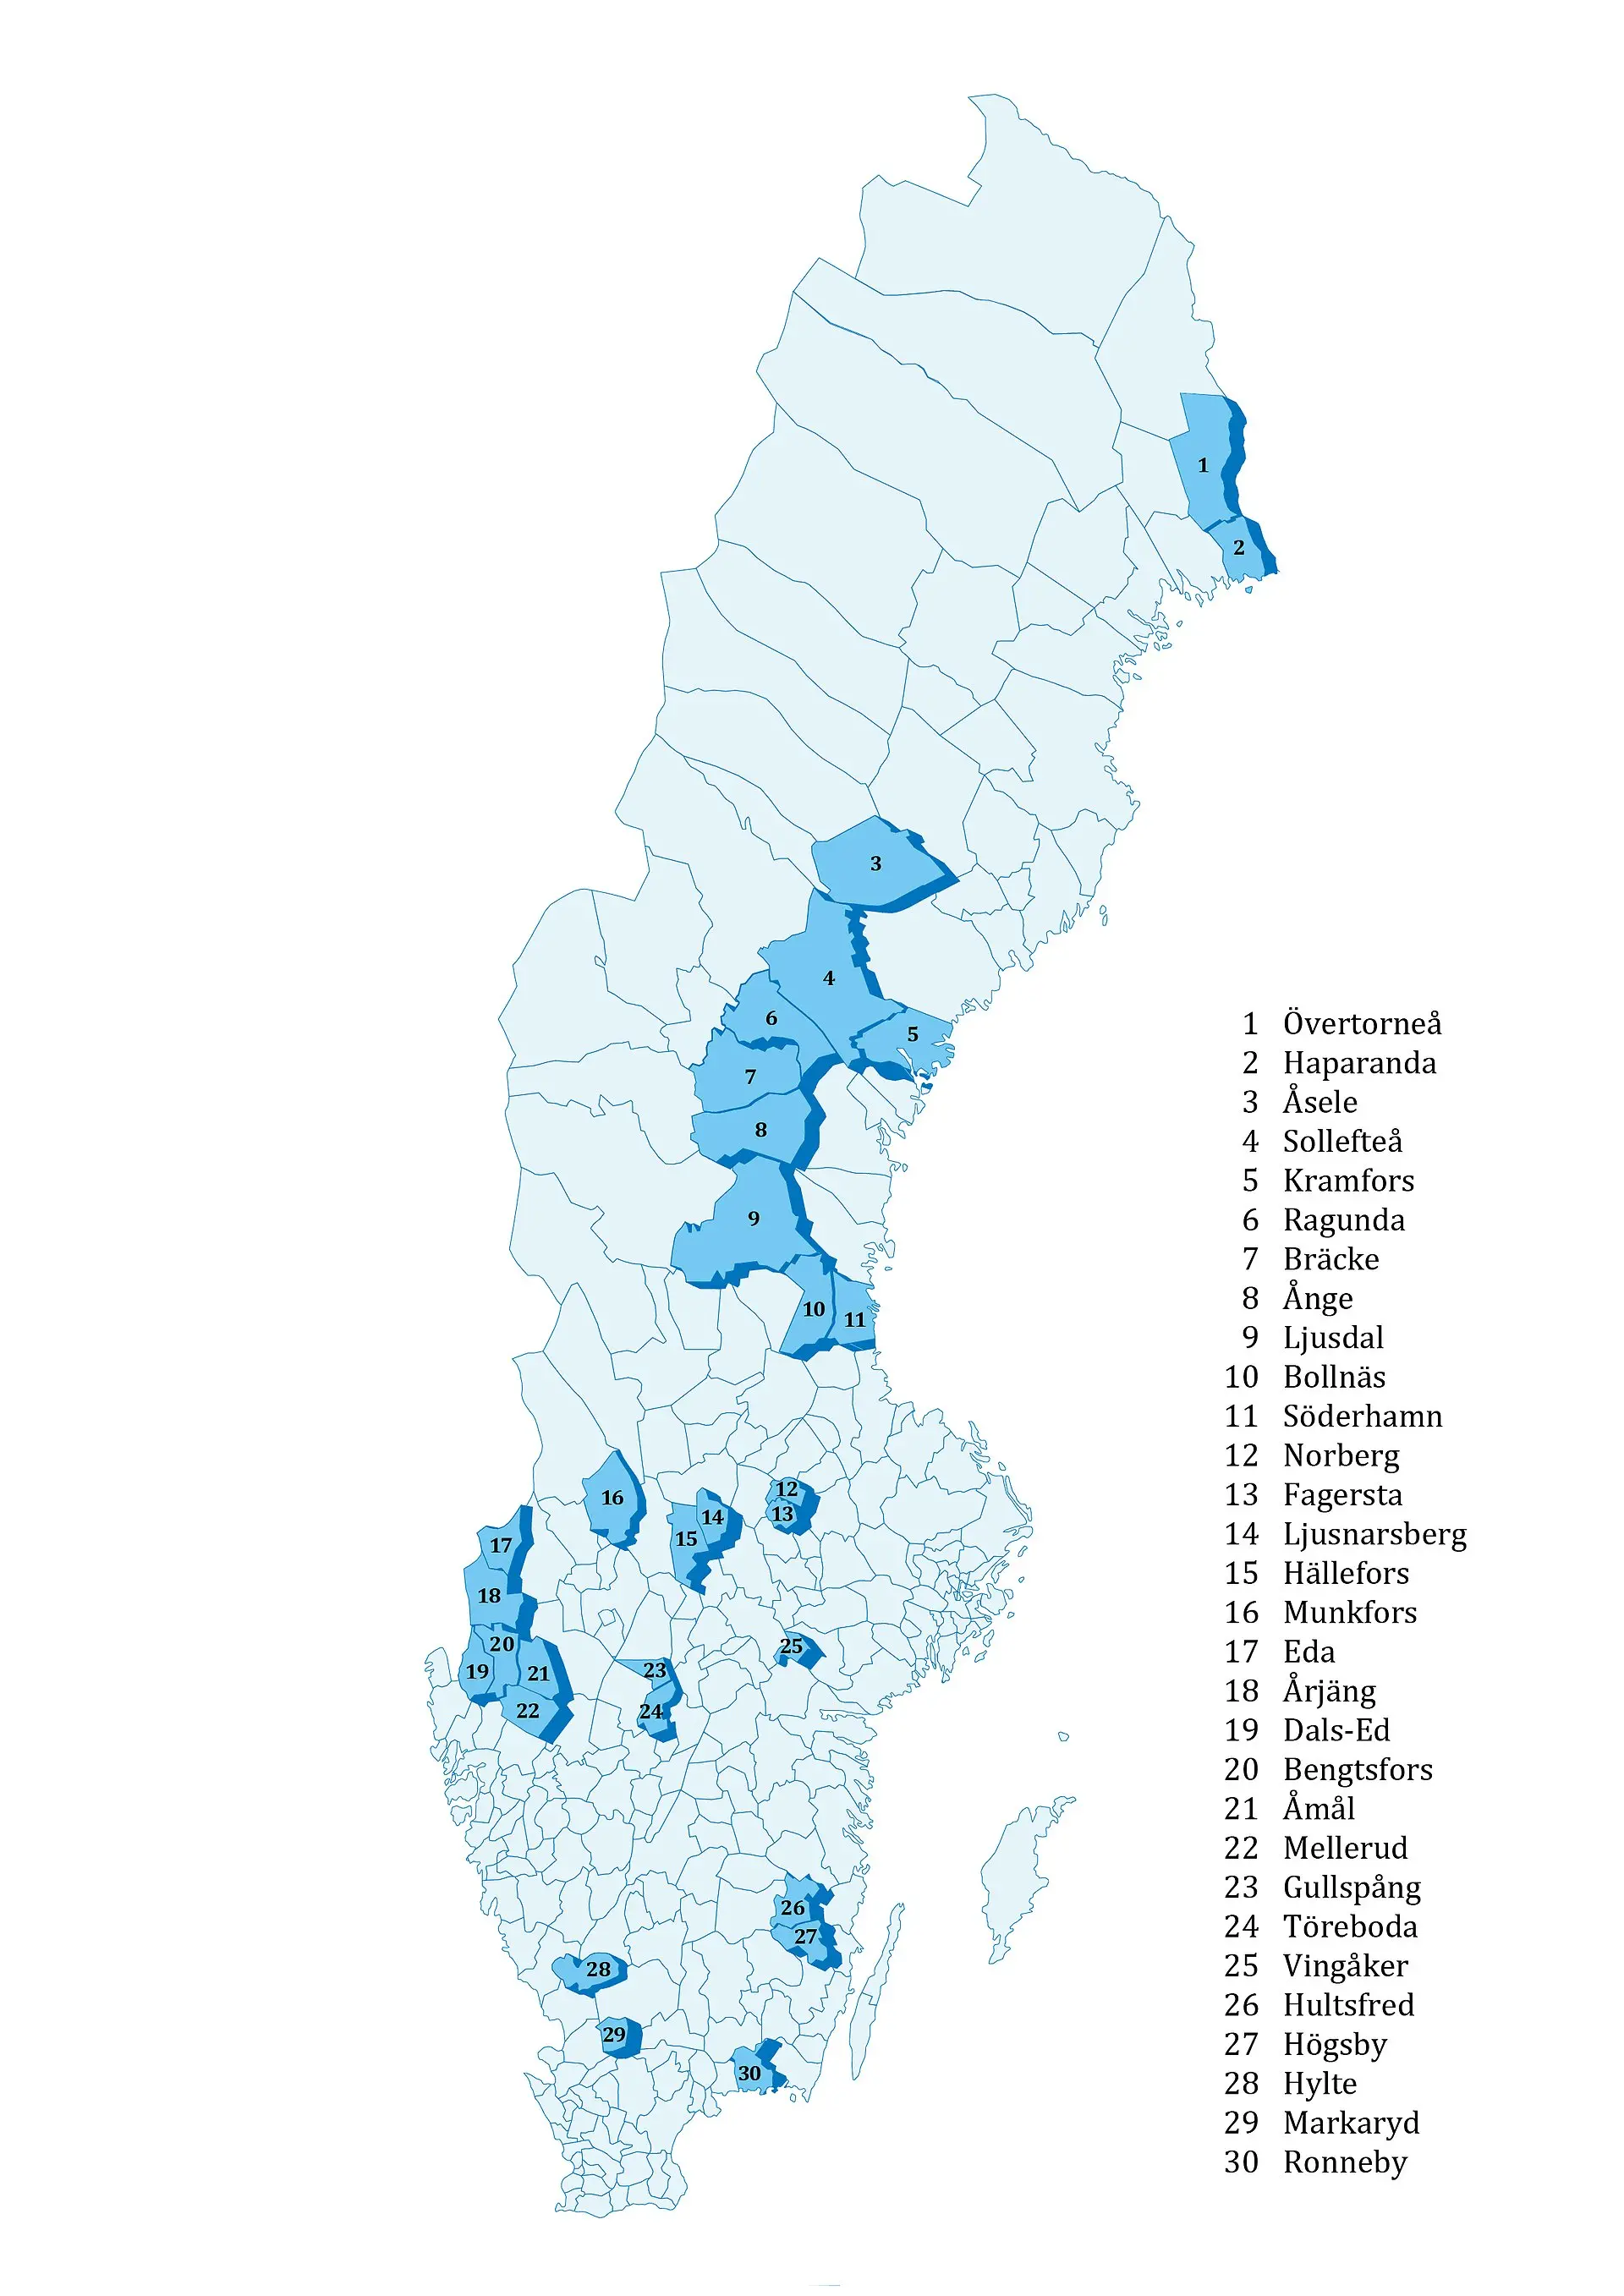 Karta över Sverige där de 30 kommuner som stärker sin sociala och ekonomiska kapacitet är markerade och namngivna. Syntolkning finns i textstycket under bilden.